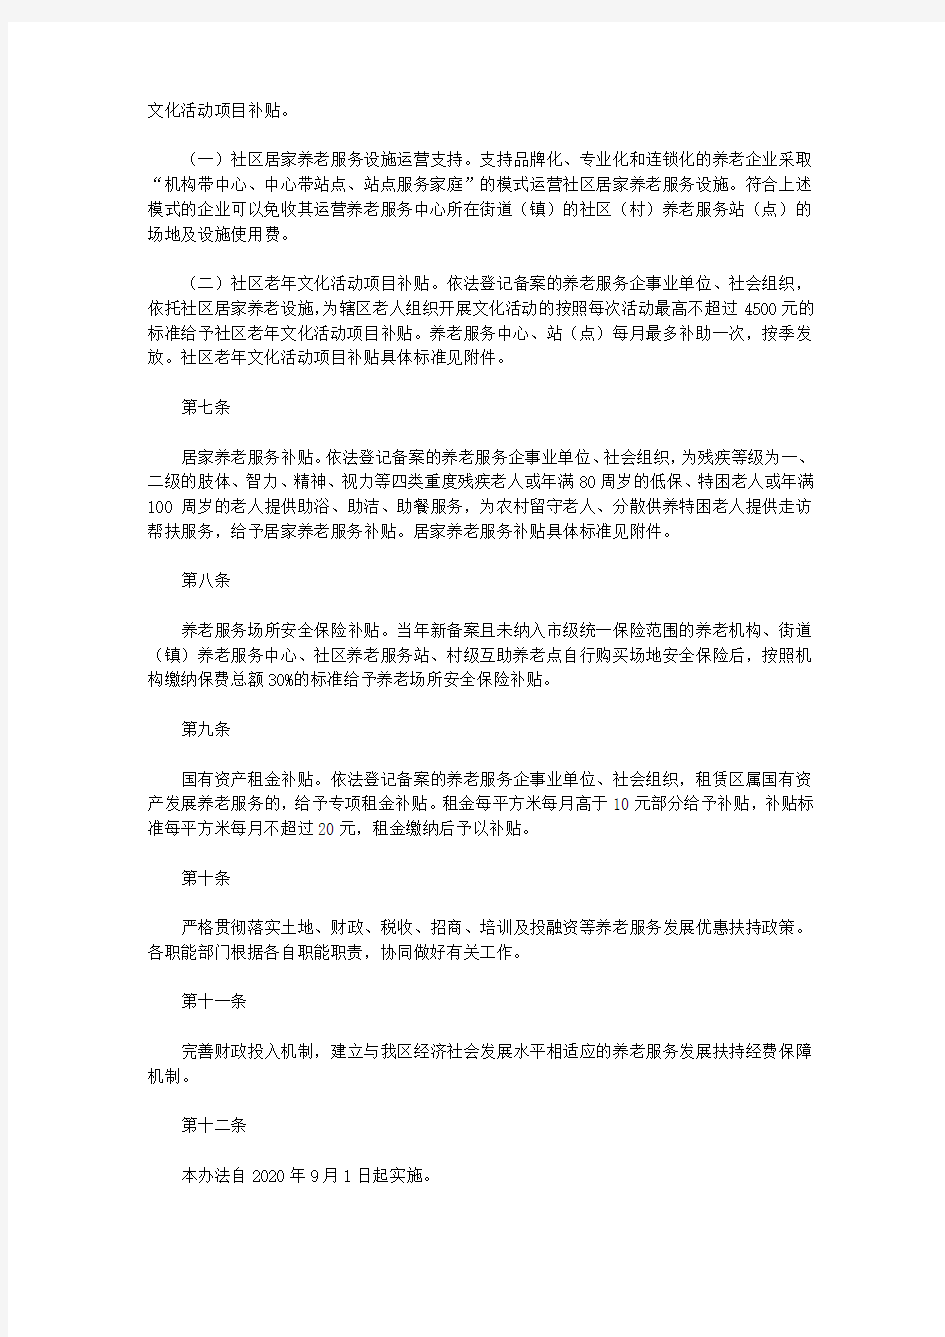 重庆市长寿区养老服务发展扶持办法(试行)